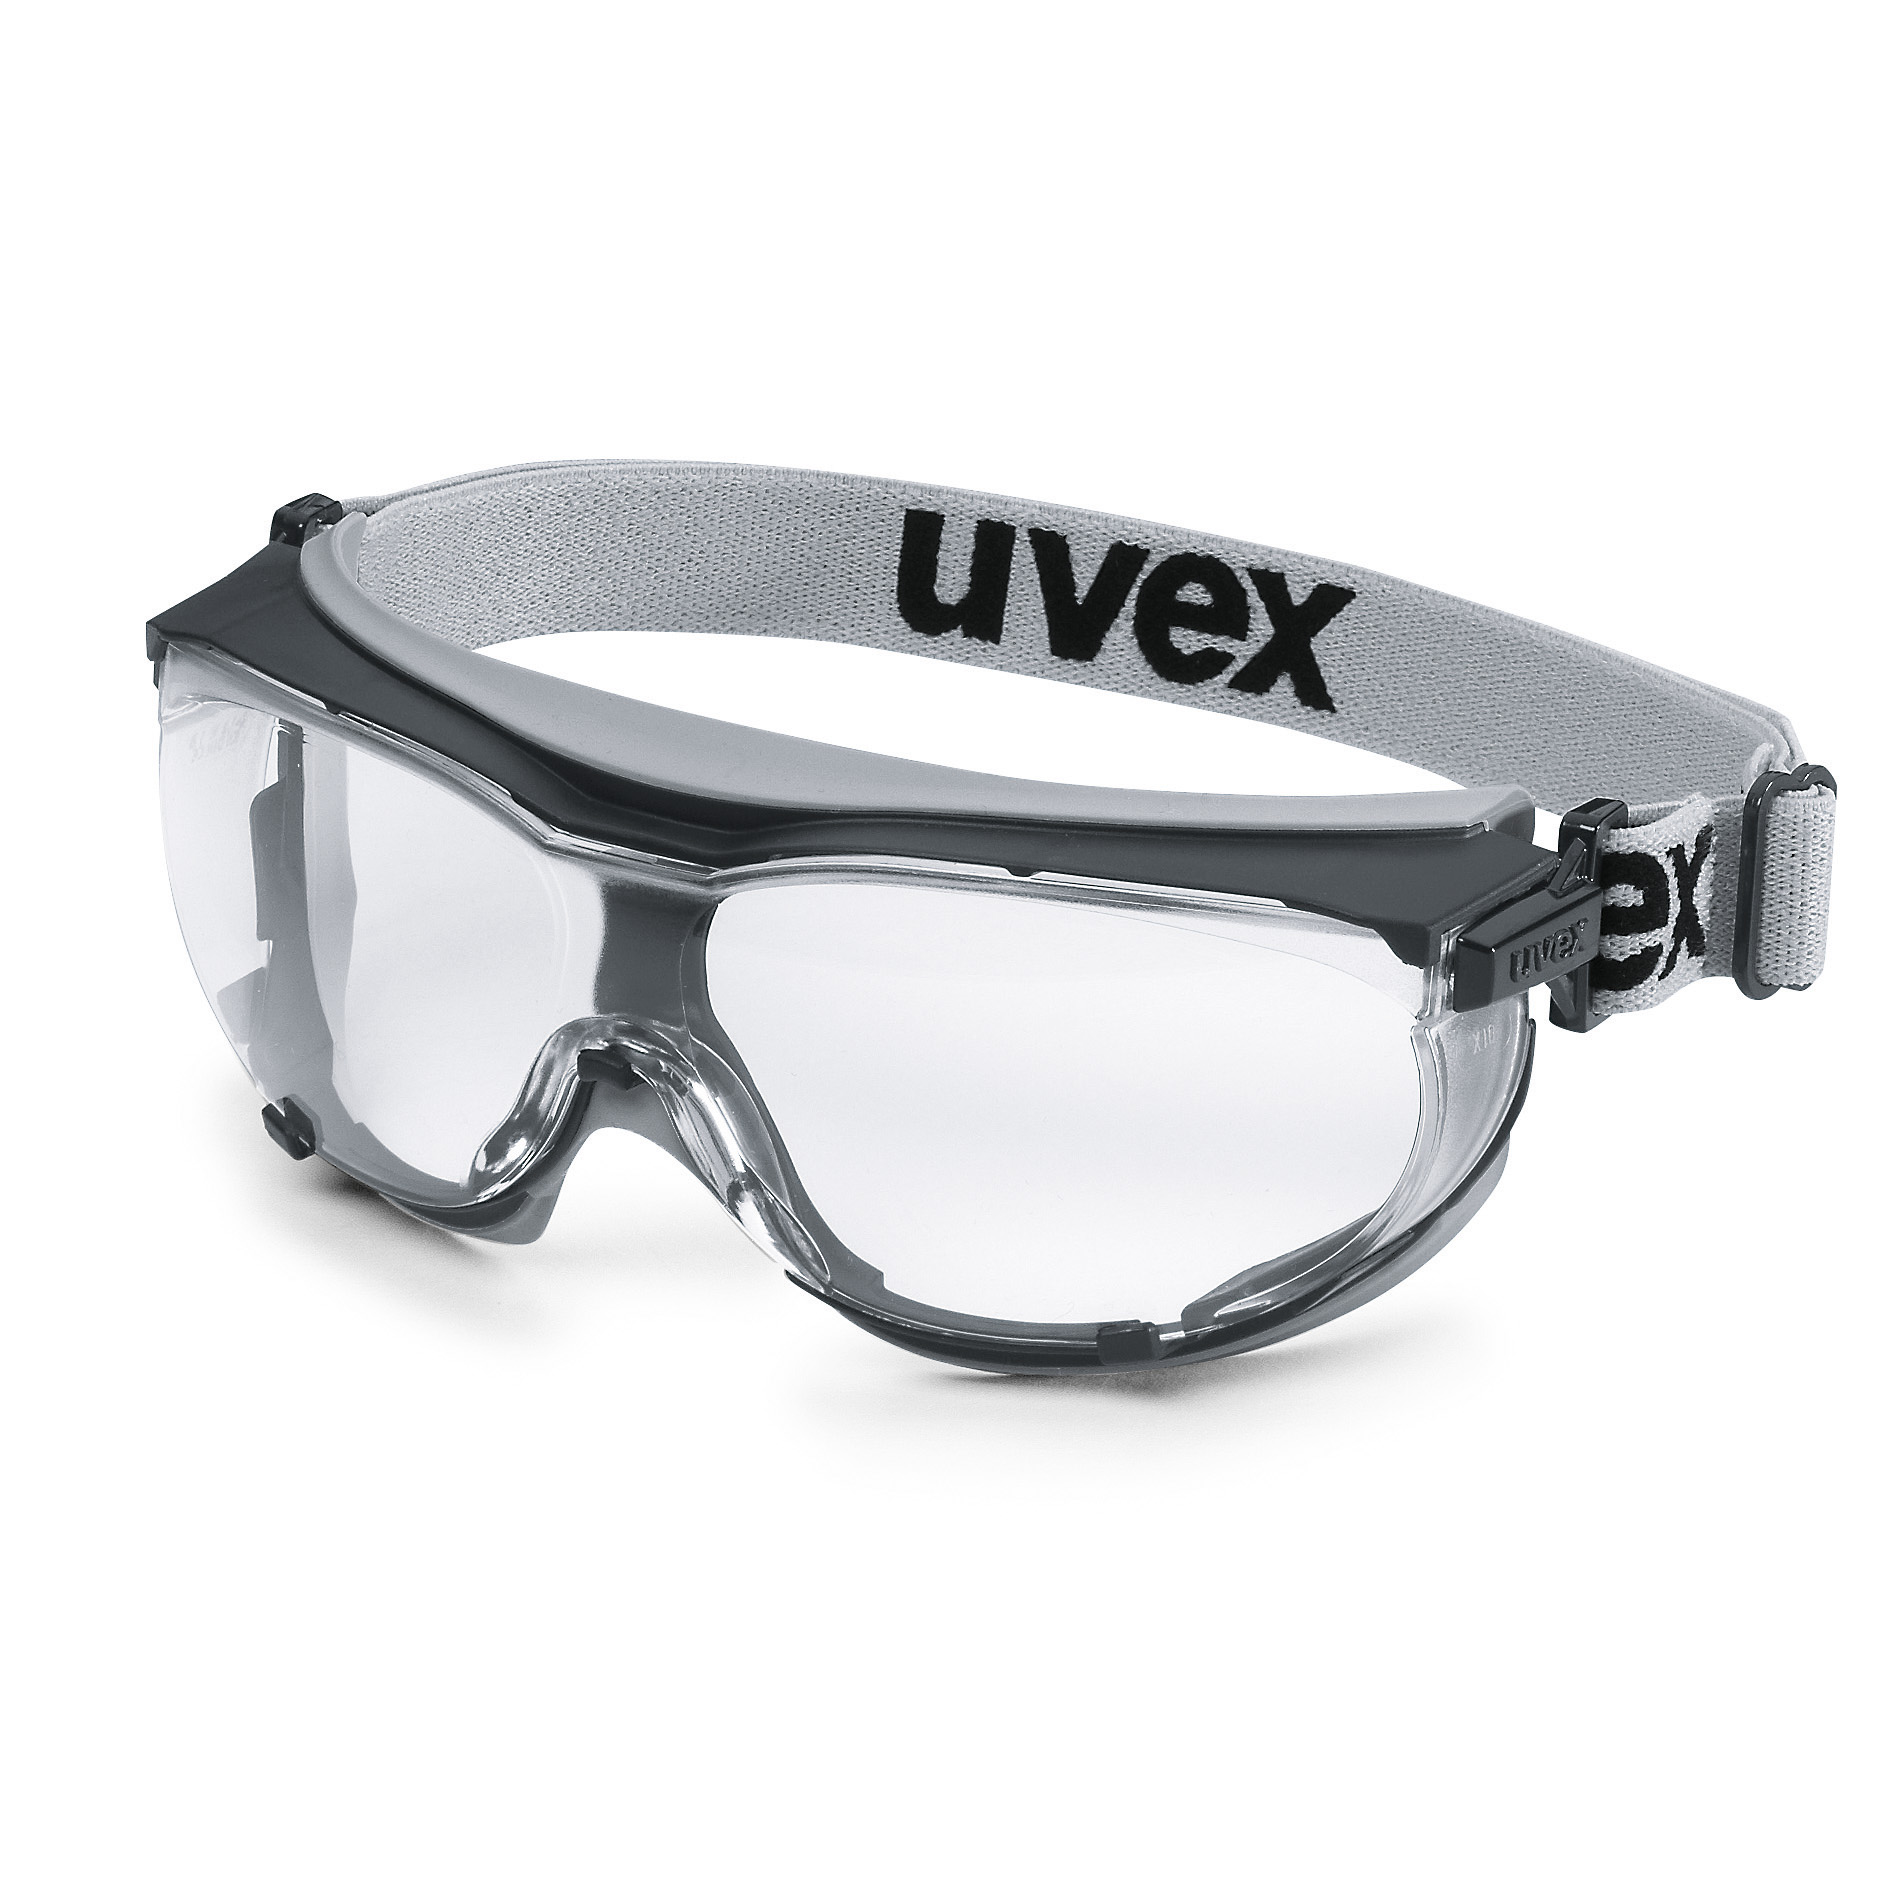 Vollsichtbrille uvex carbovision schwarz, grau, mit Neopren-Kopfband